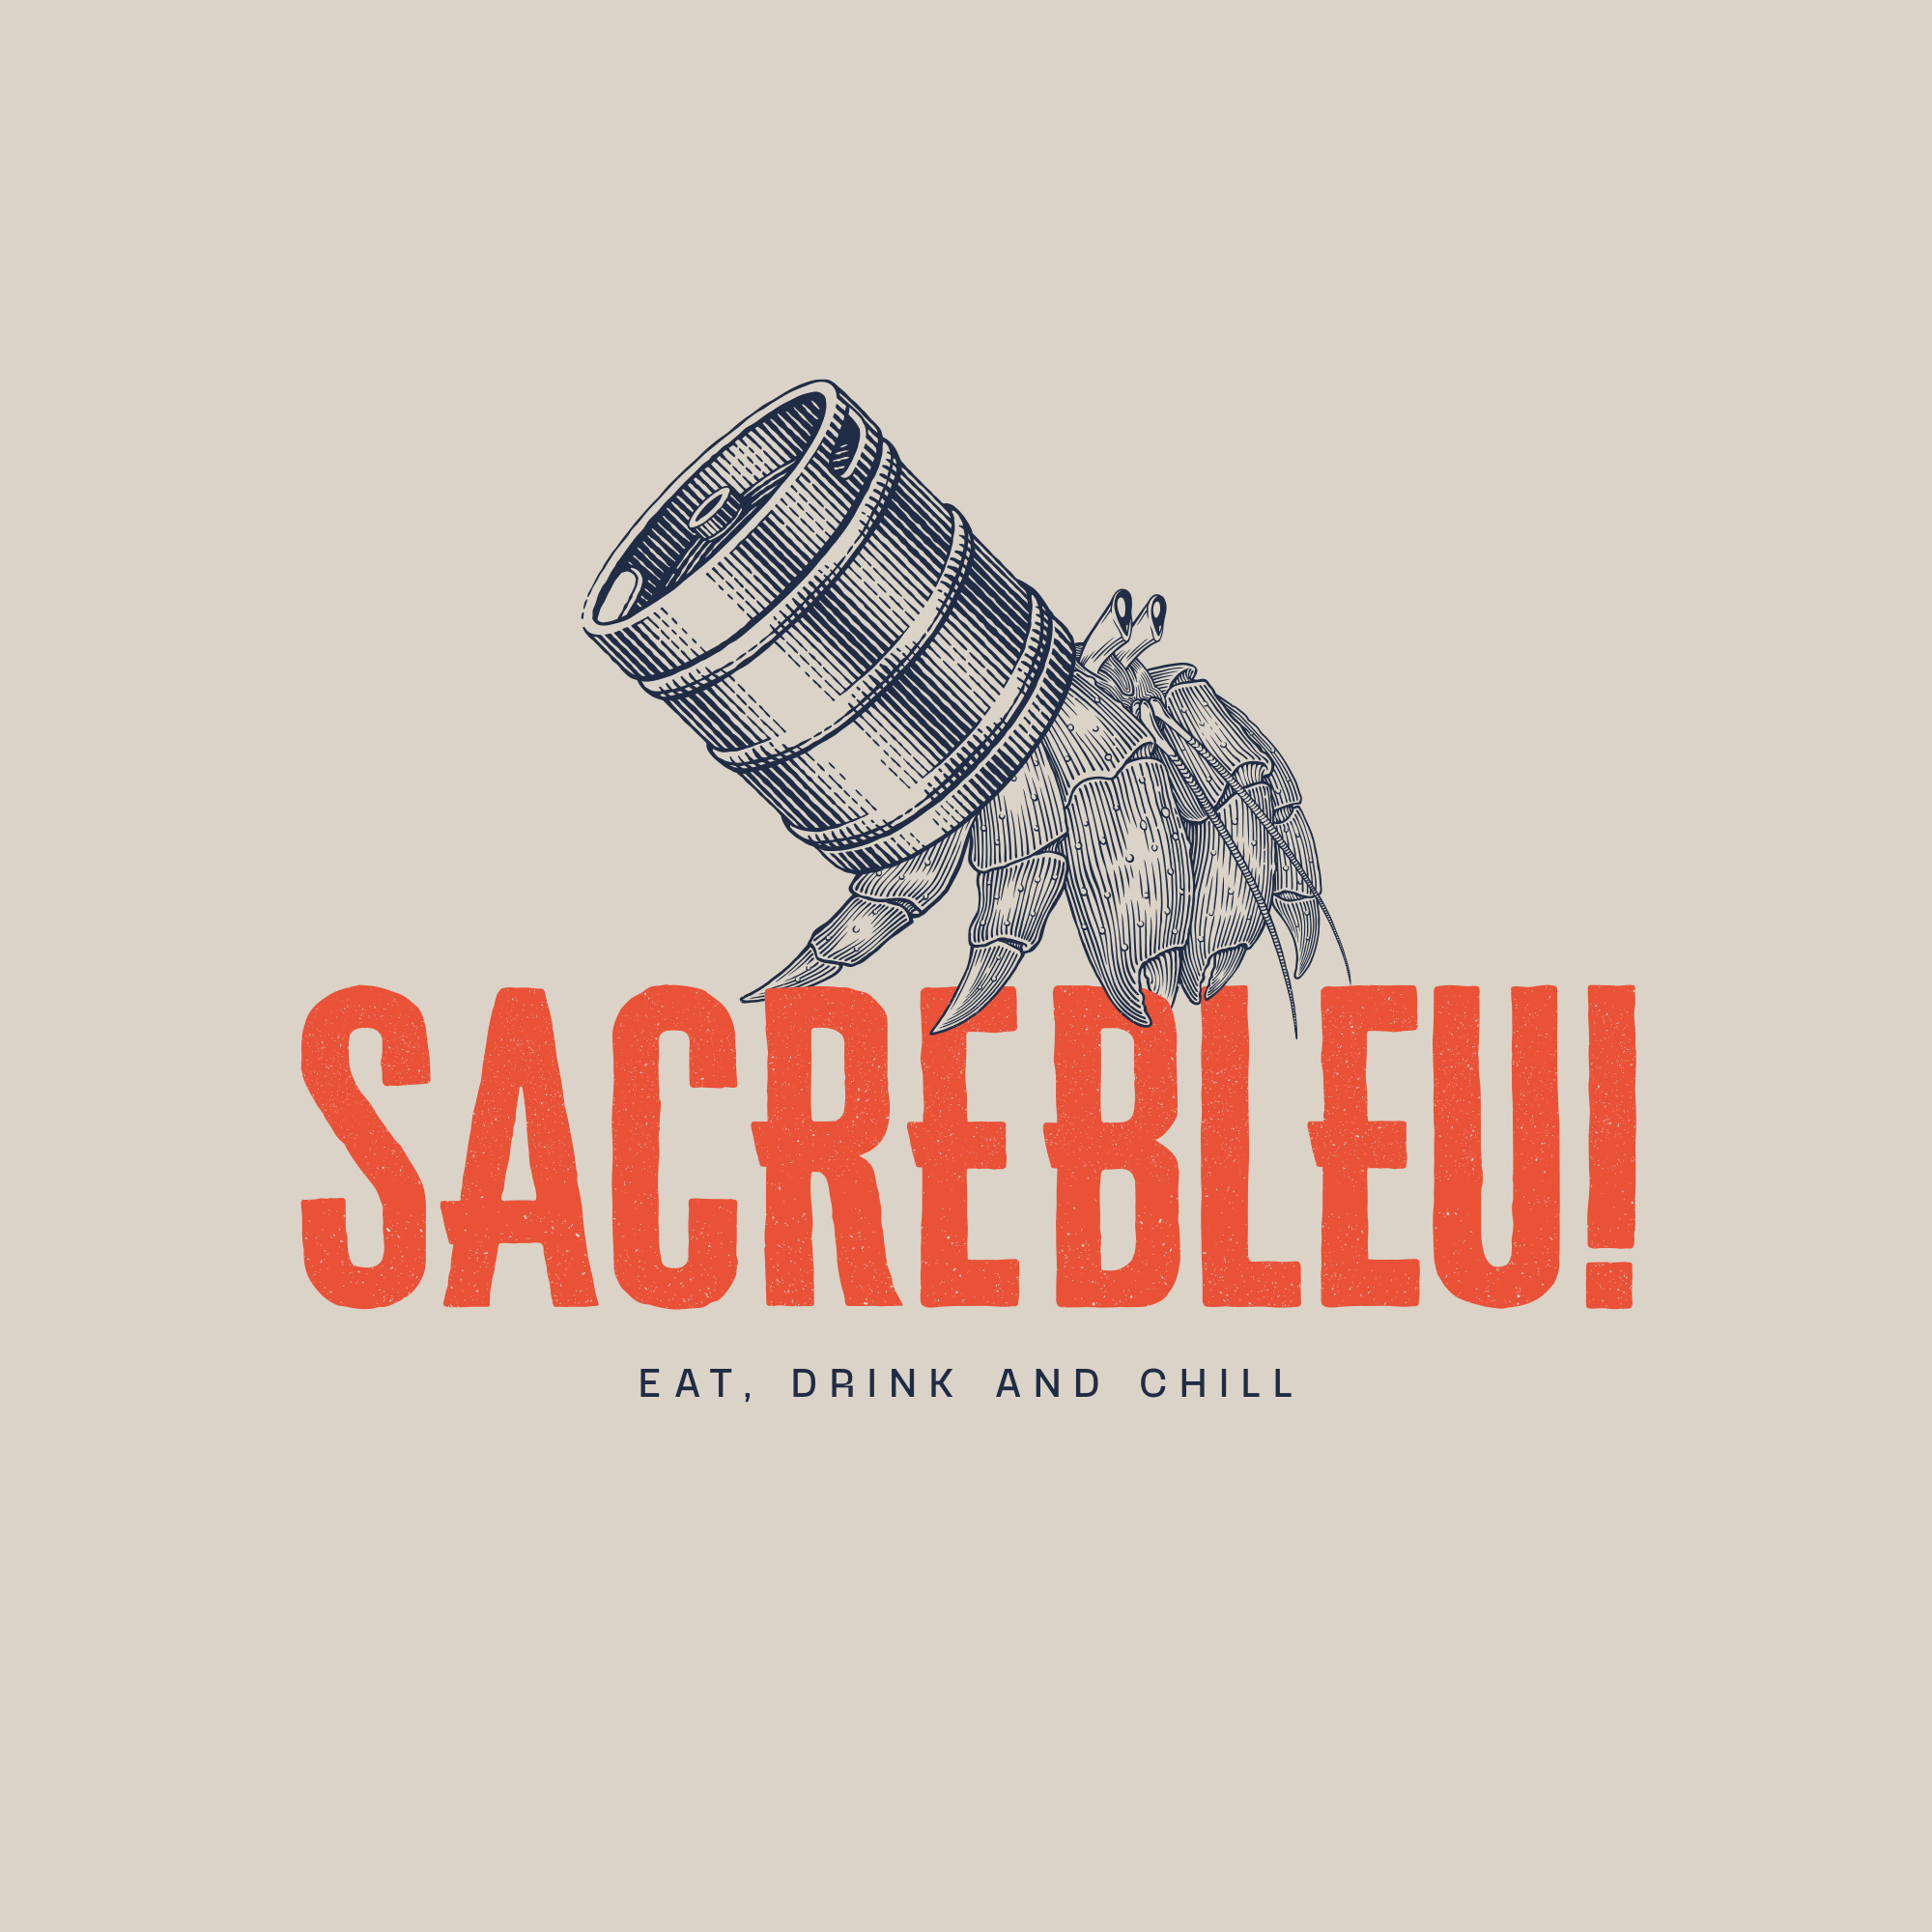 Sacrebleu Bar Branding by Buckwild